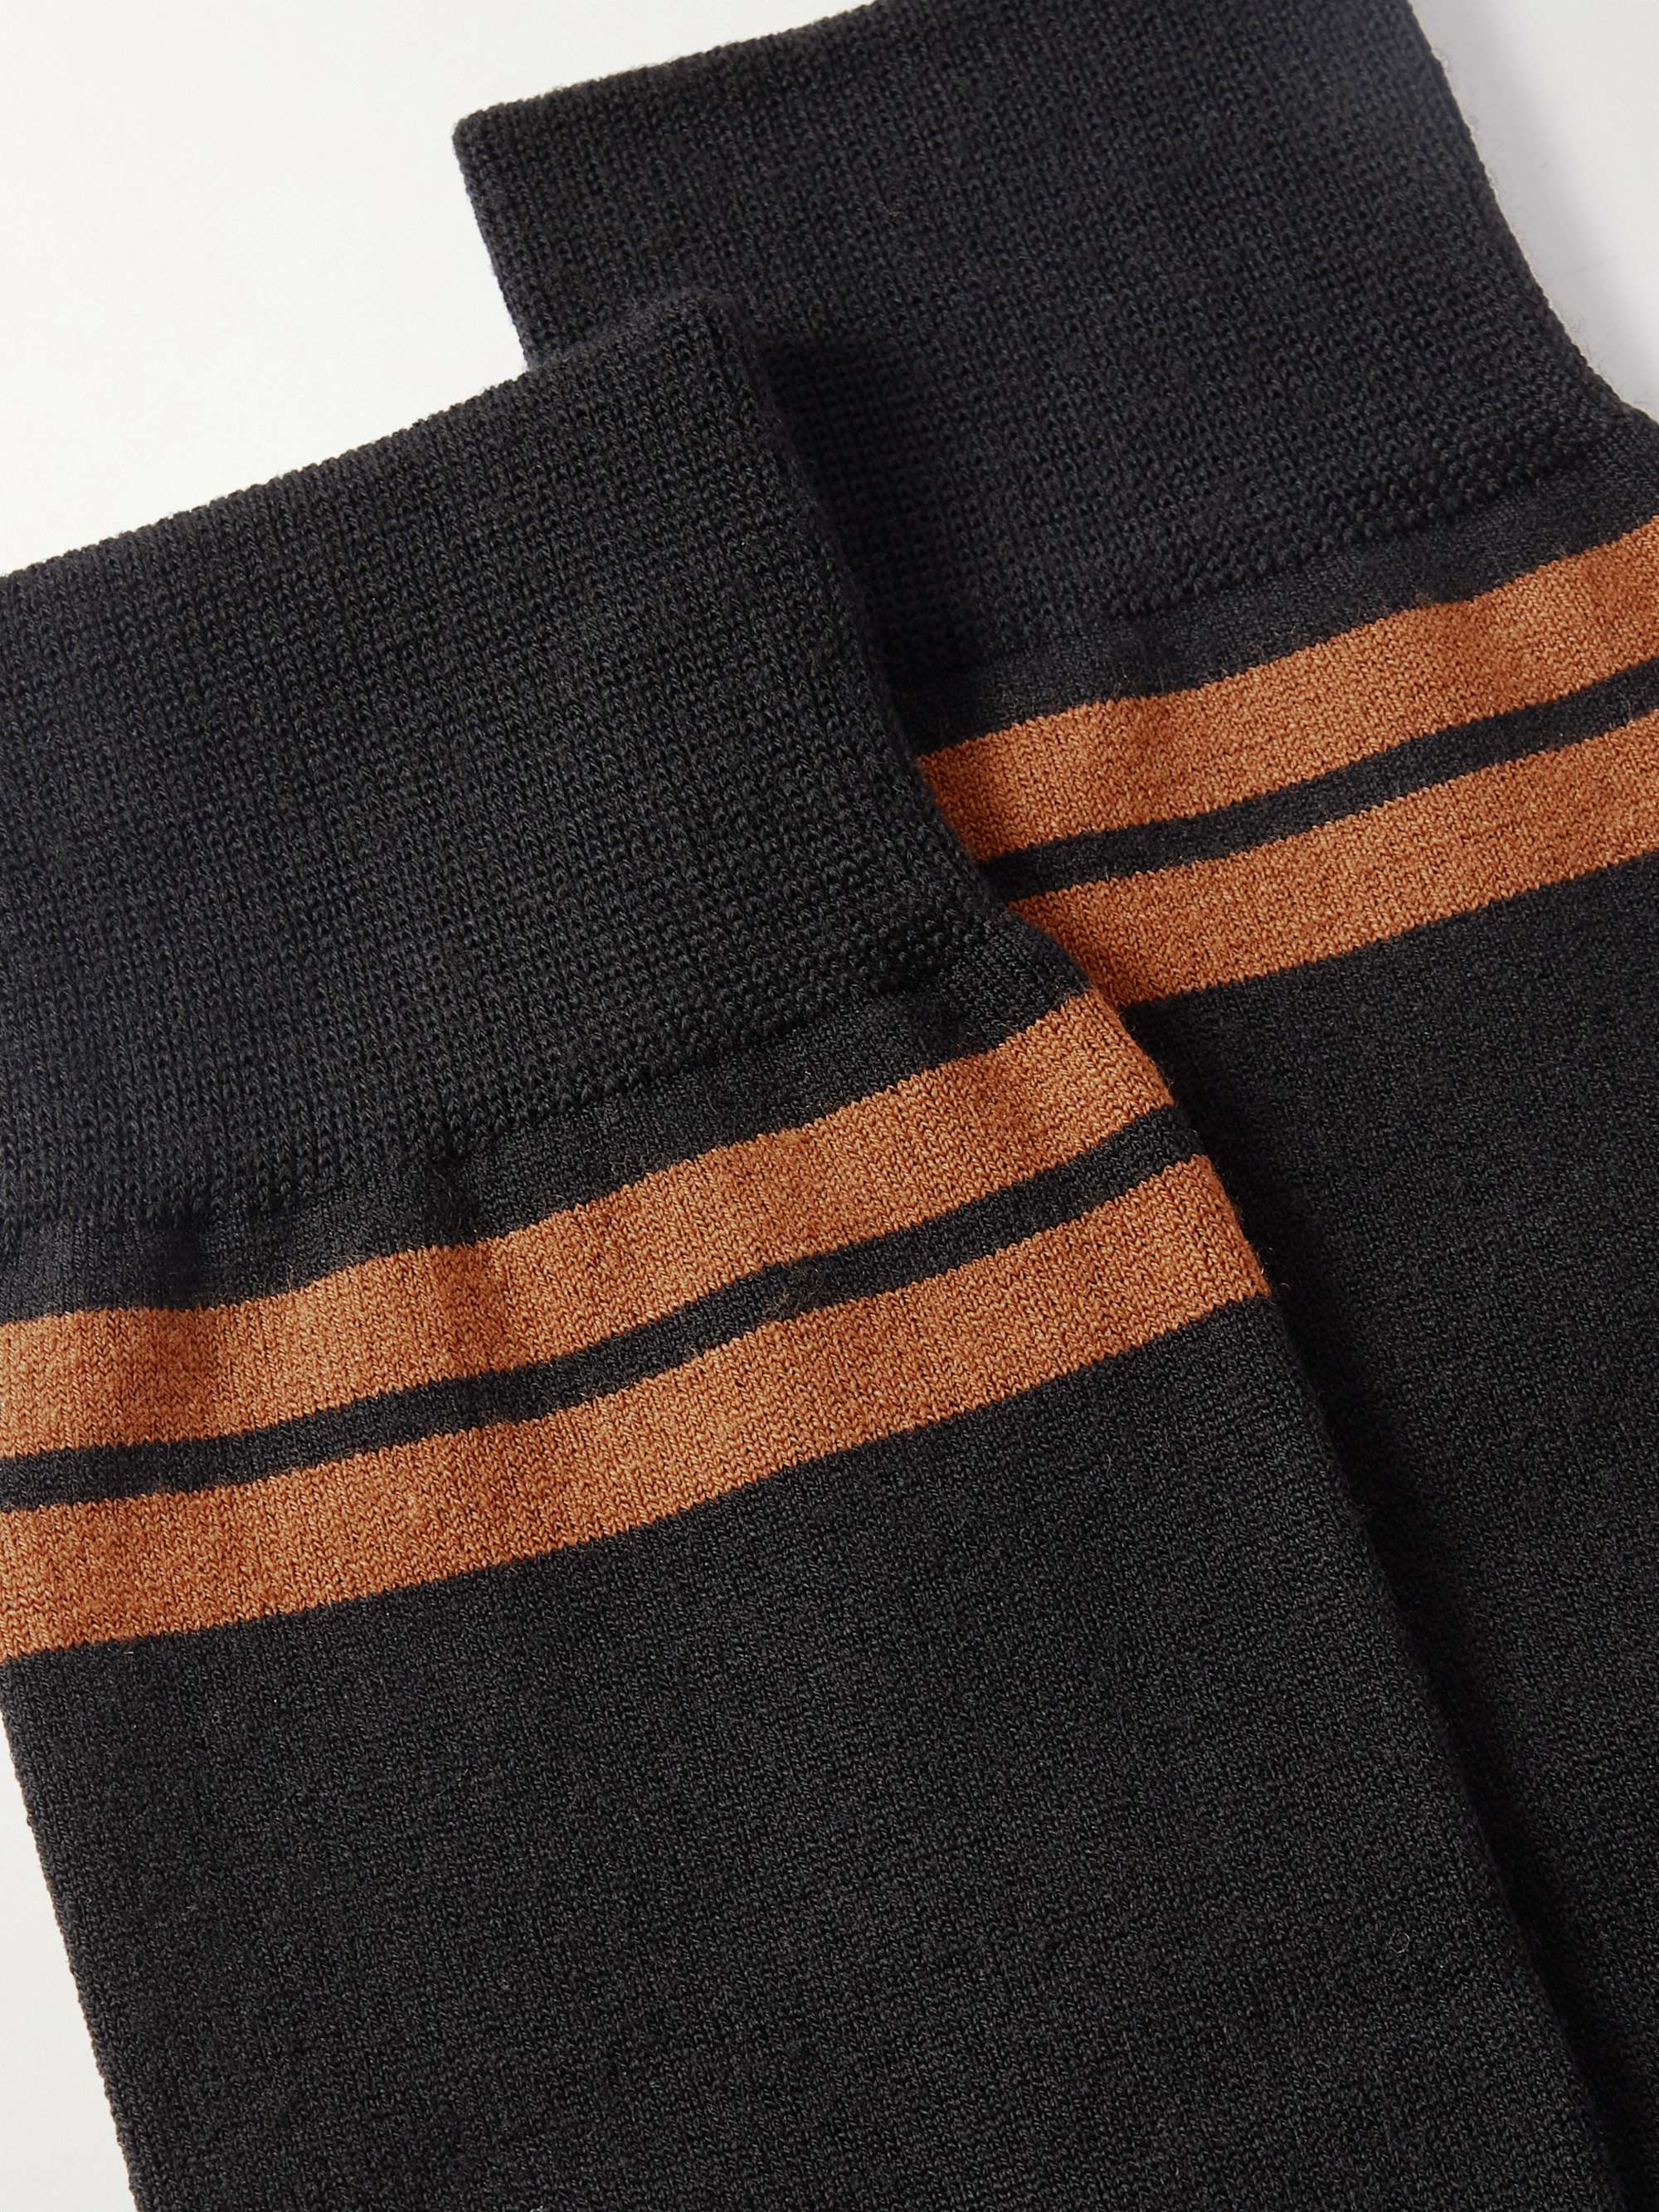 ZEGNA Striped Wool-Blend Socks